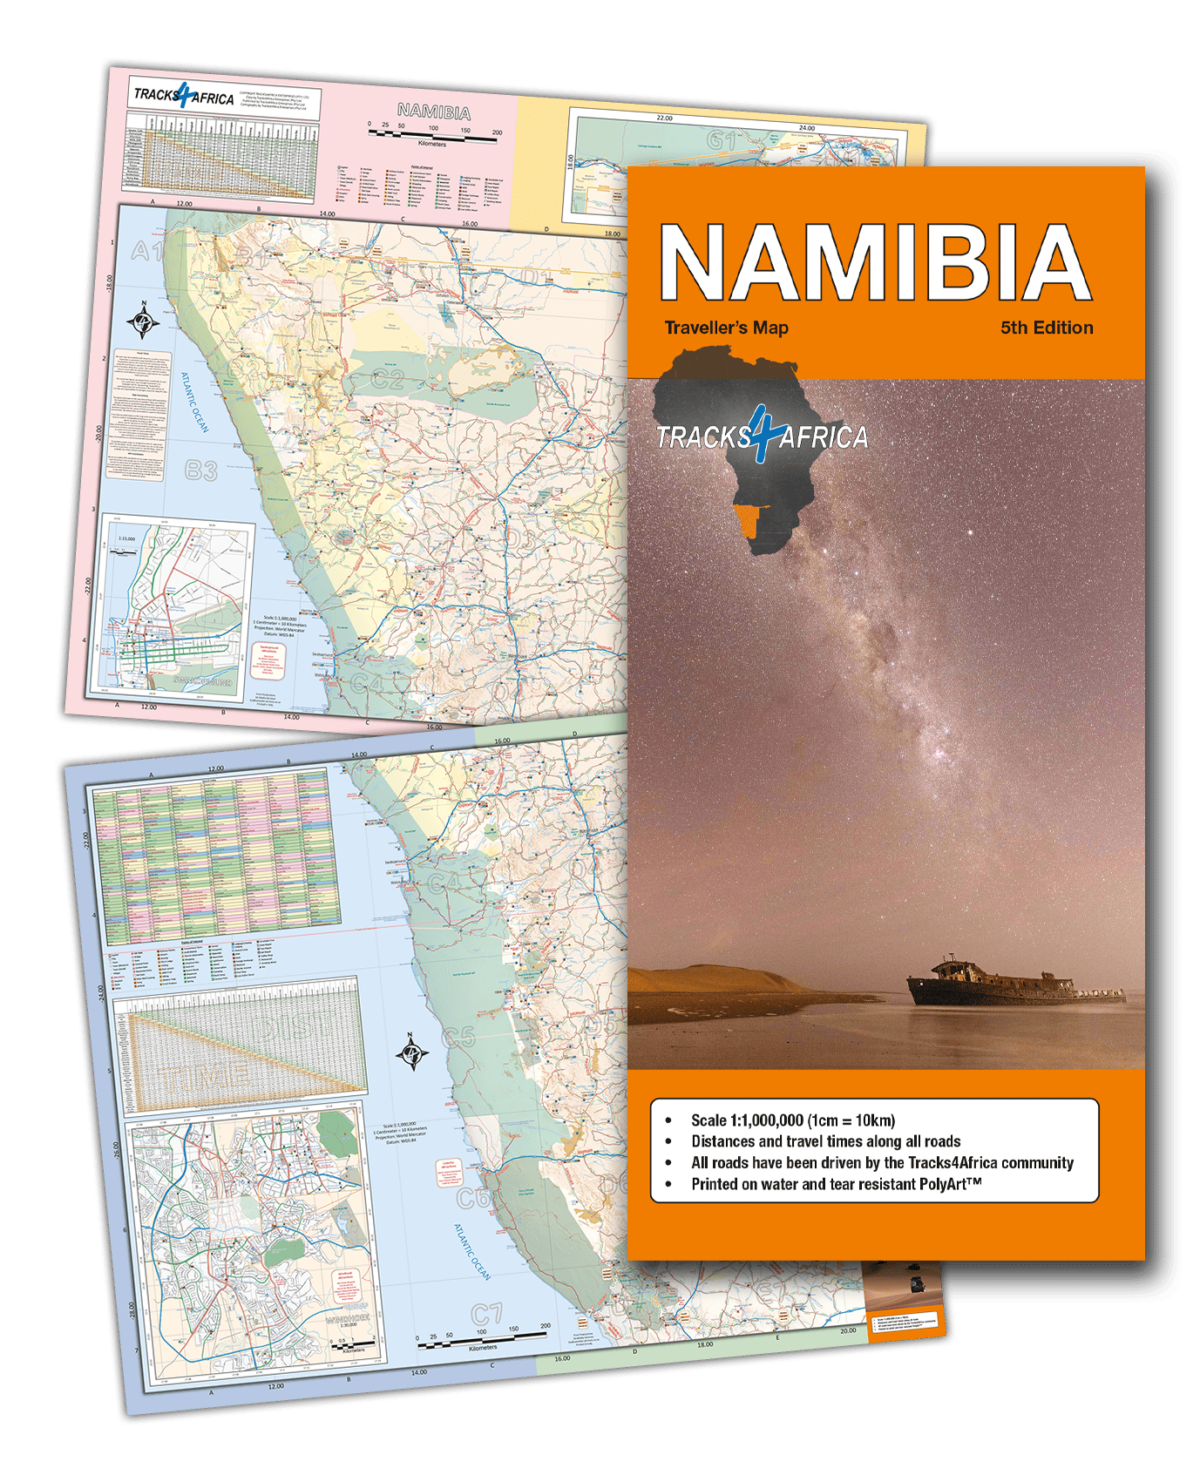 Namibia Papierkarte